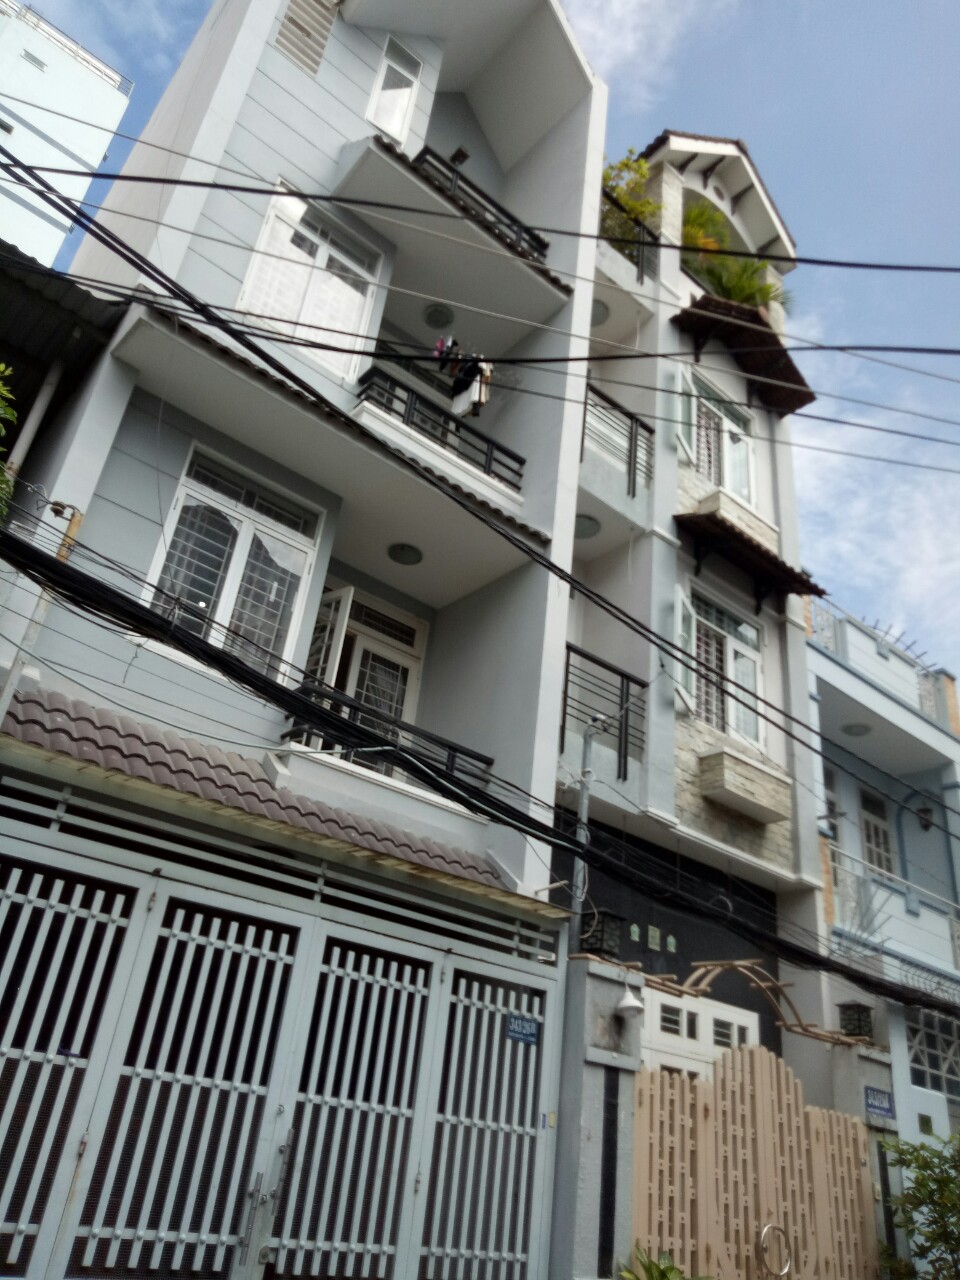 Chia tài sản cần bán gấp nhà đường Nguyễn Thái Bình, P. 4, Tân Bình, DT 4.2x16m, 3 lầu.